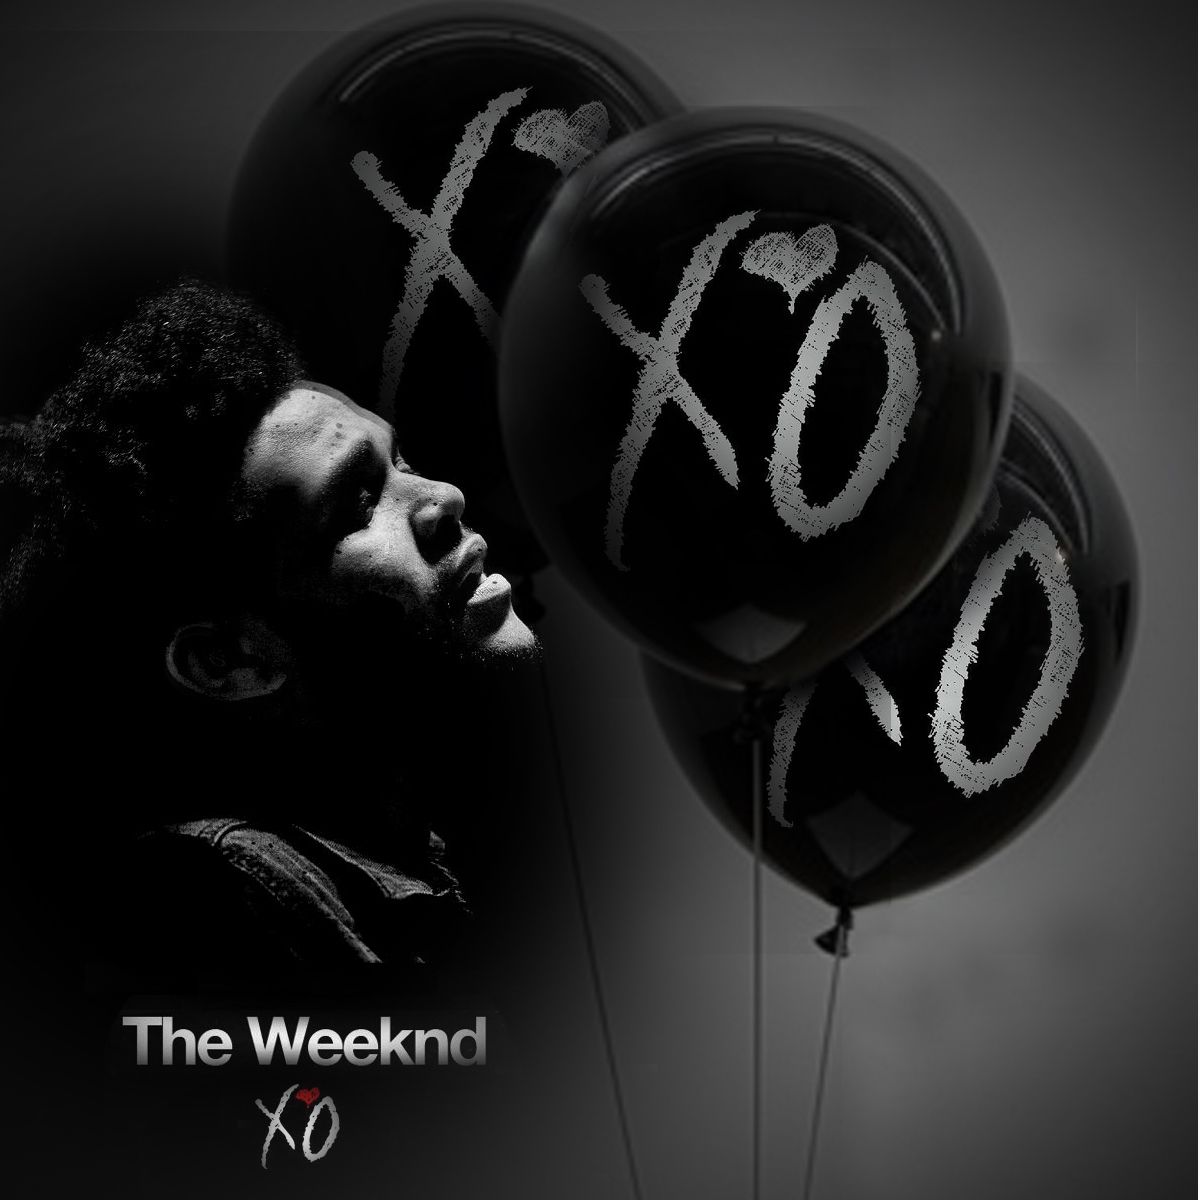 The Weeknd Wallpaper. The Weeknd Wallpaper Best, Weeknd Wallpaper Balloons and Weeknd Drake Wallpaper